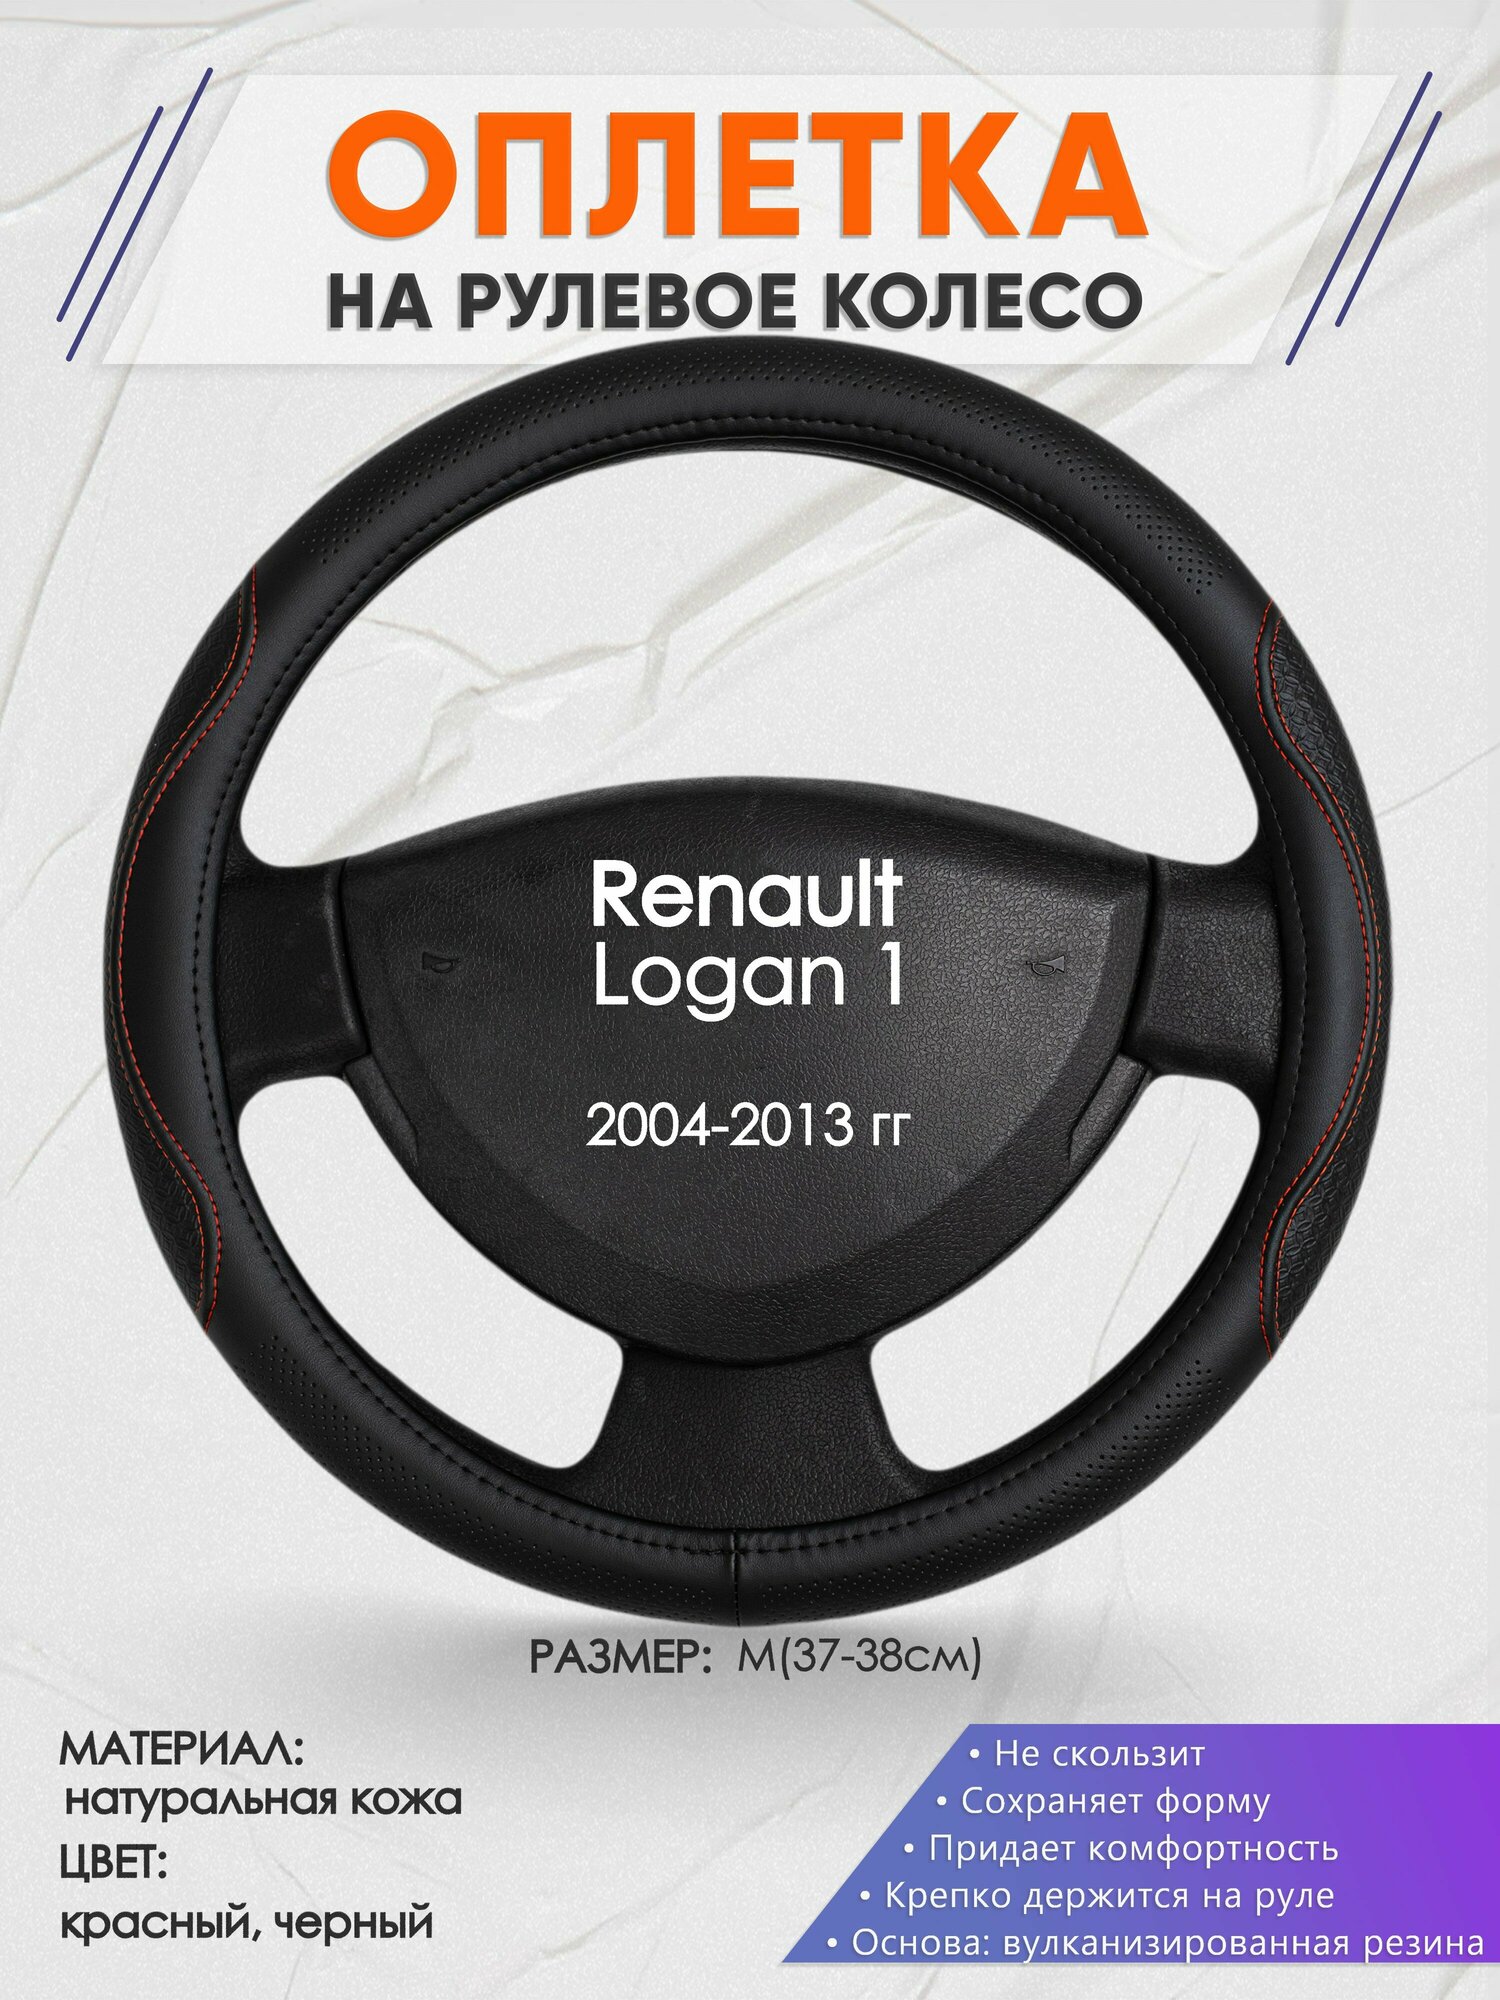 Оплетка на руль для Renault Logan 1(Рено Логан 1) 2004-2013, M(37-38см), Натуральная кожа 27